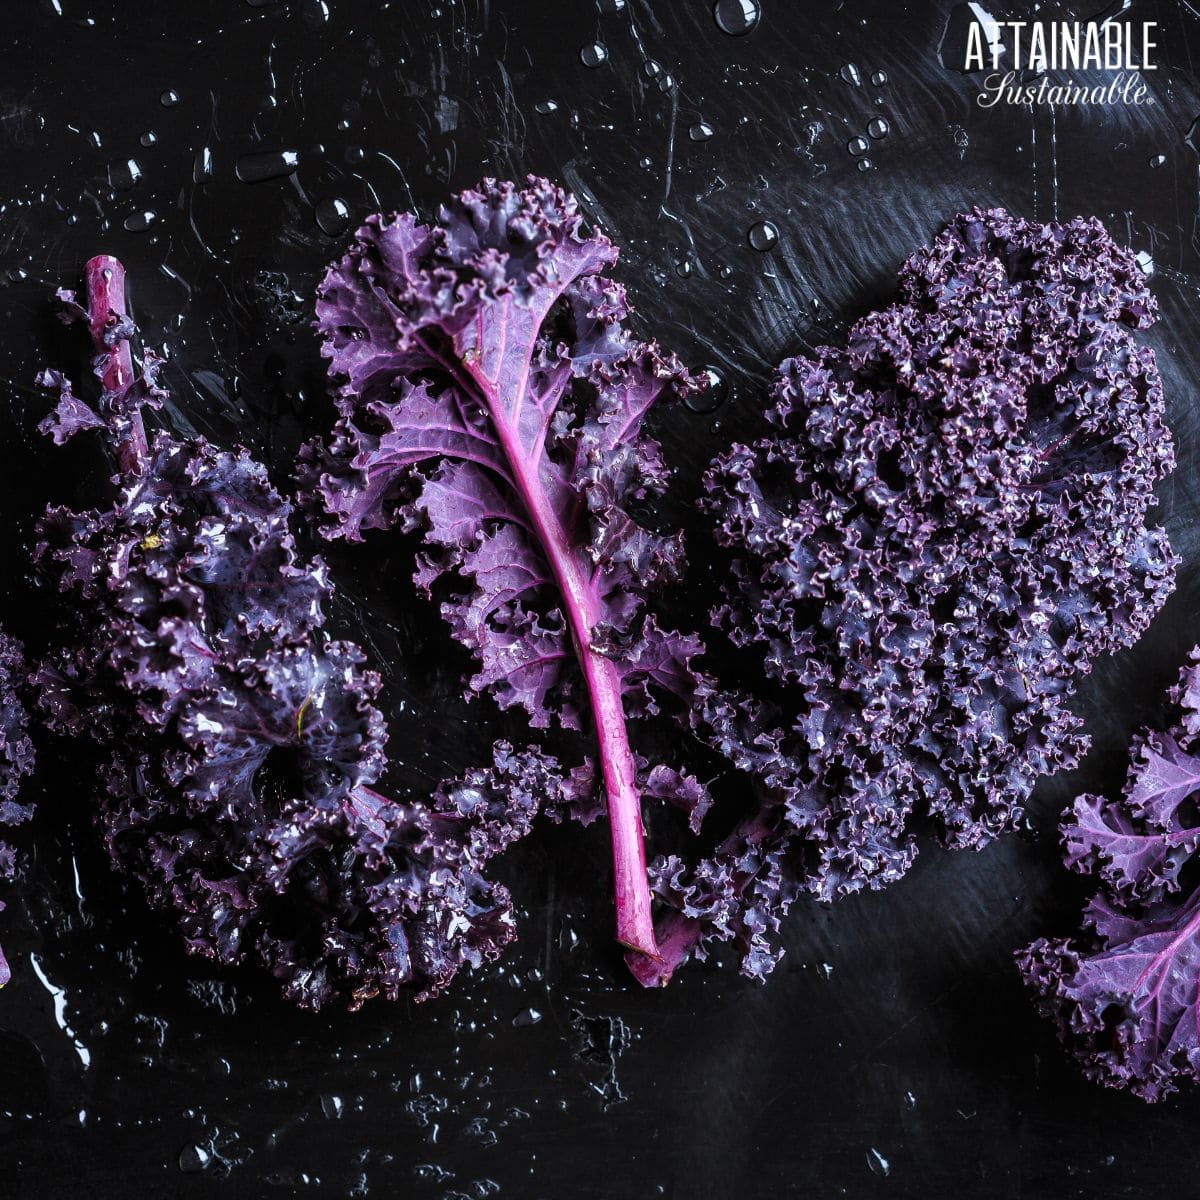 dark purple curly leaf kale.